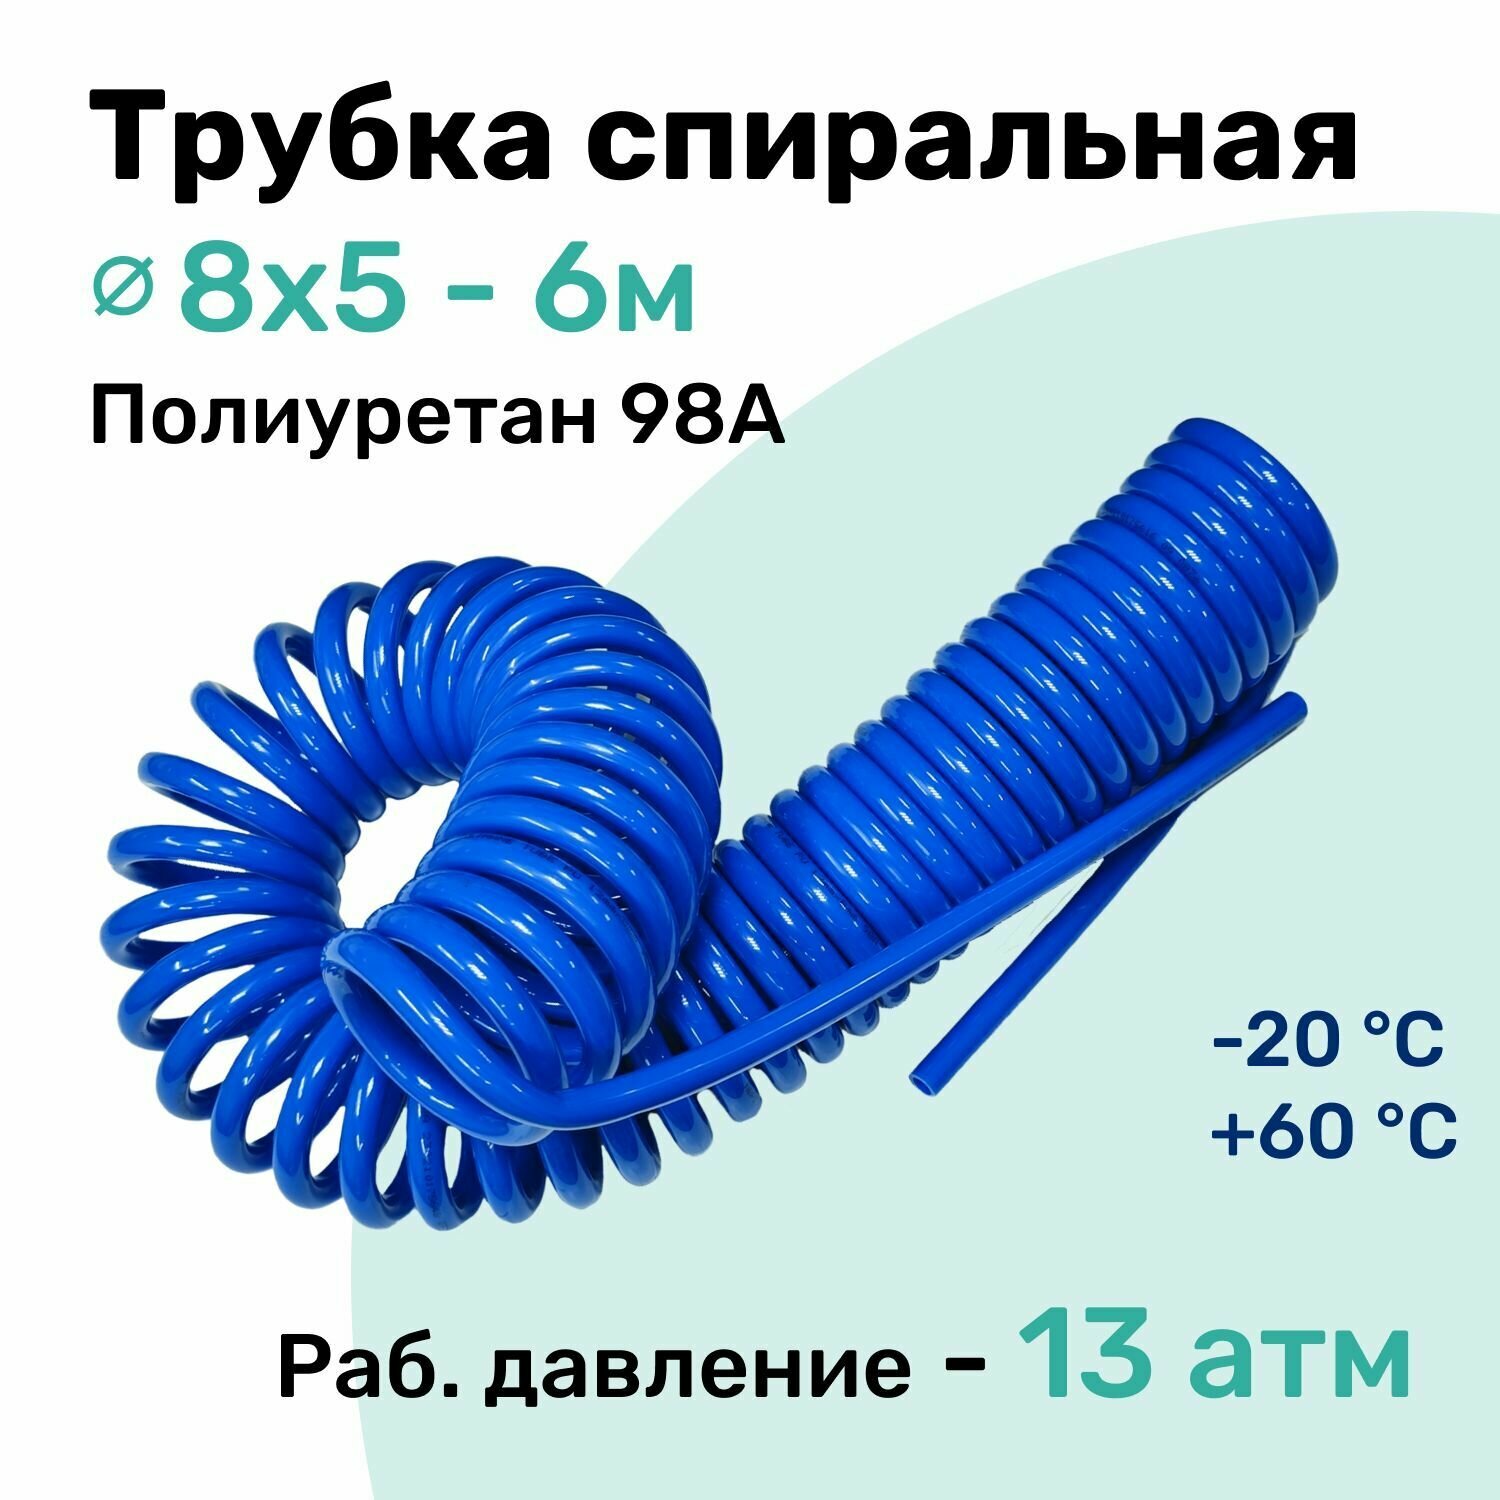 Пневмотрубка спиральная 8x5мм, полиуретановая PU98A, 6м, 13 атм, Синий, Шланг спиральный пневматический NBPT